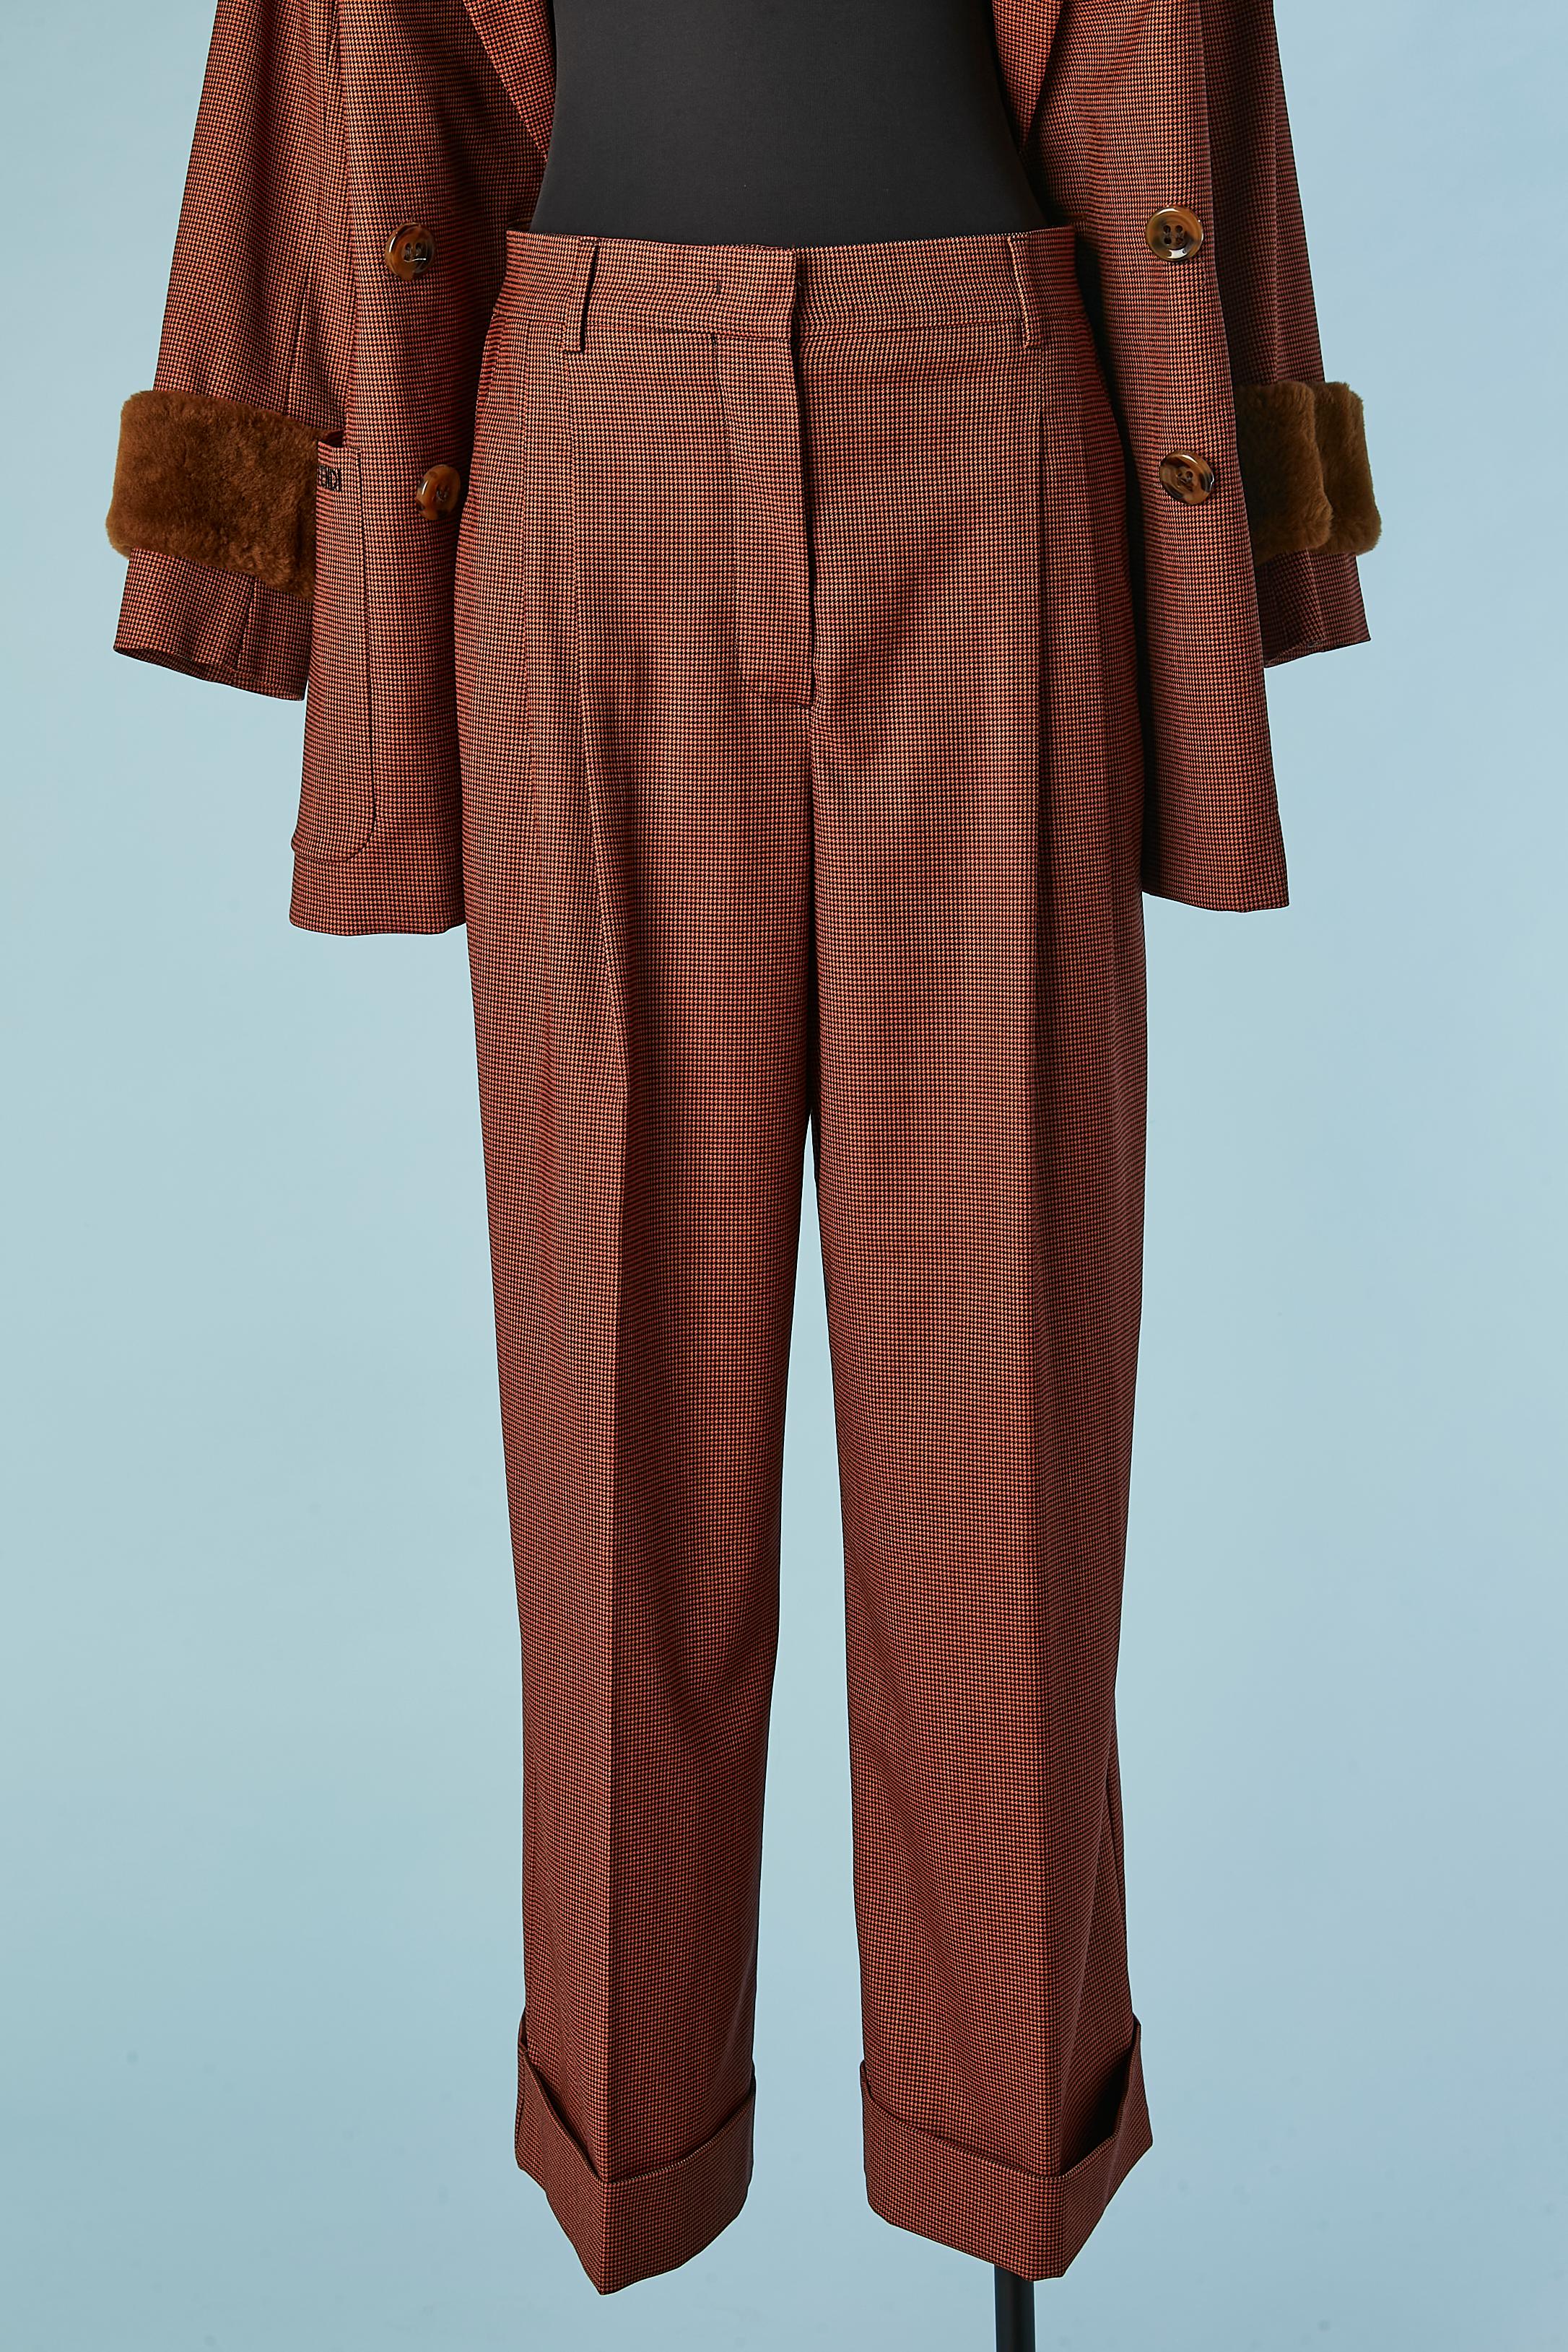 Brown and black mini Pied de poule pattern trouser-suit with fur cuffs FENDI  For Sale 4